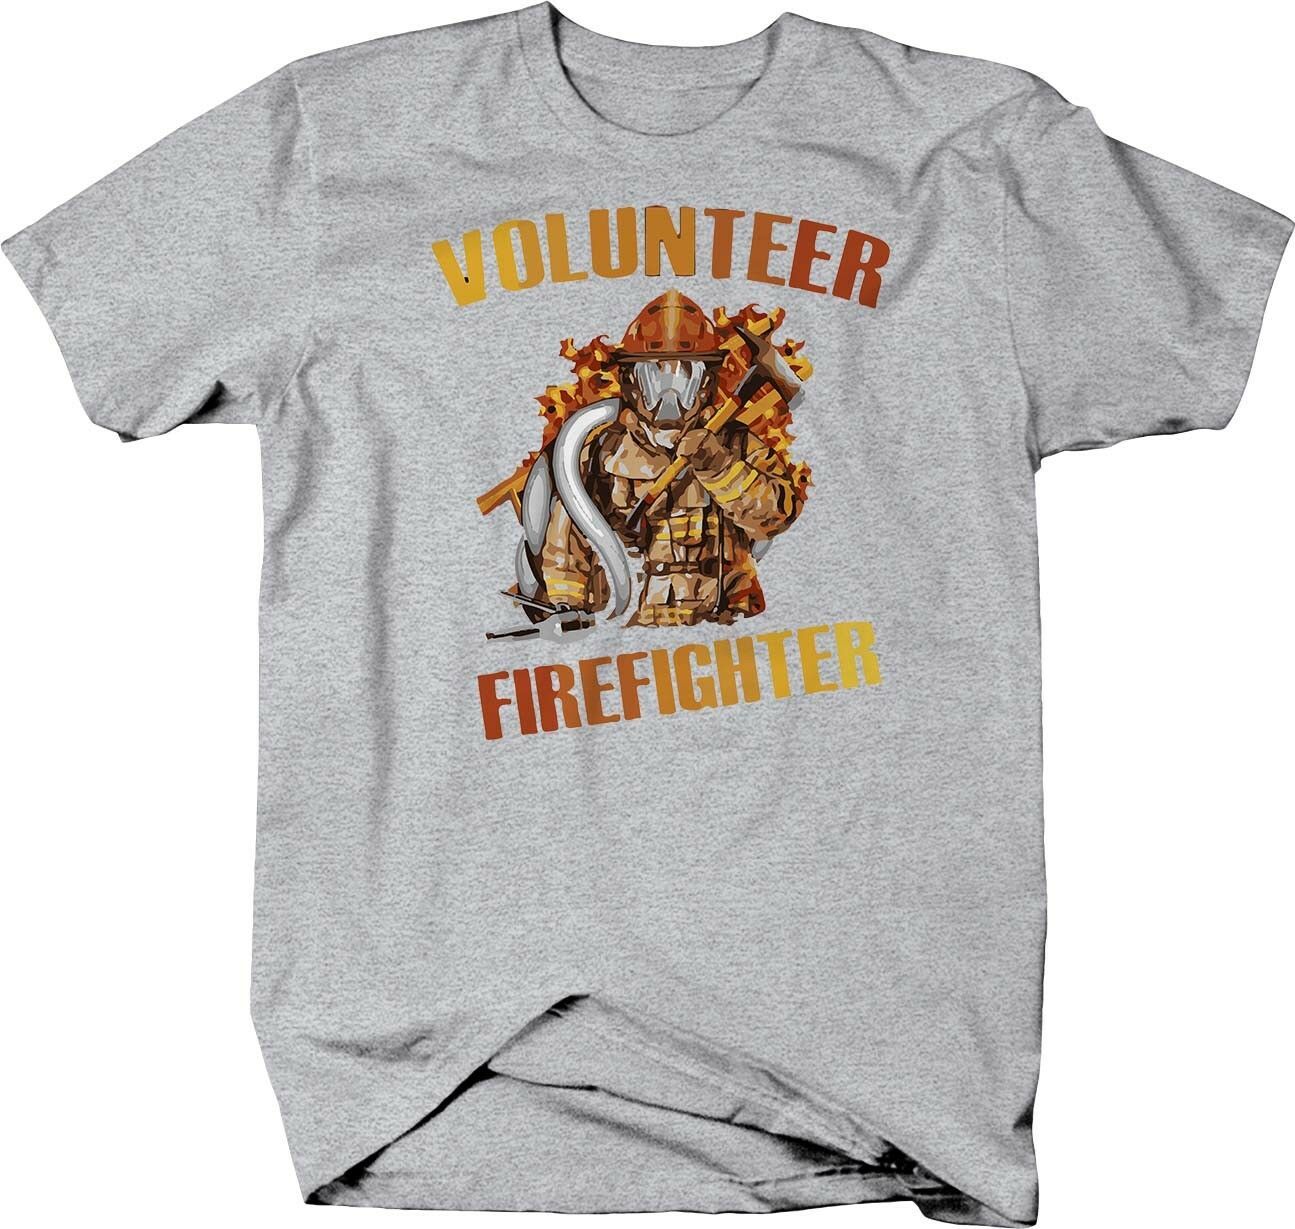 Volunteer Firefighter Fire Department T-shirt - T-Shirts, Tank Tops